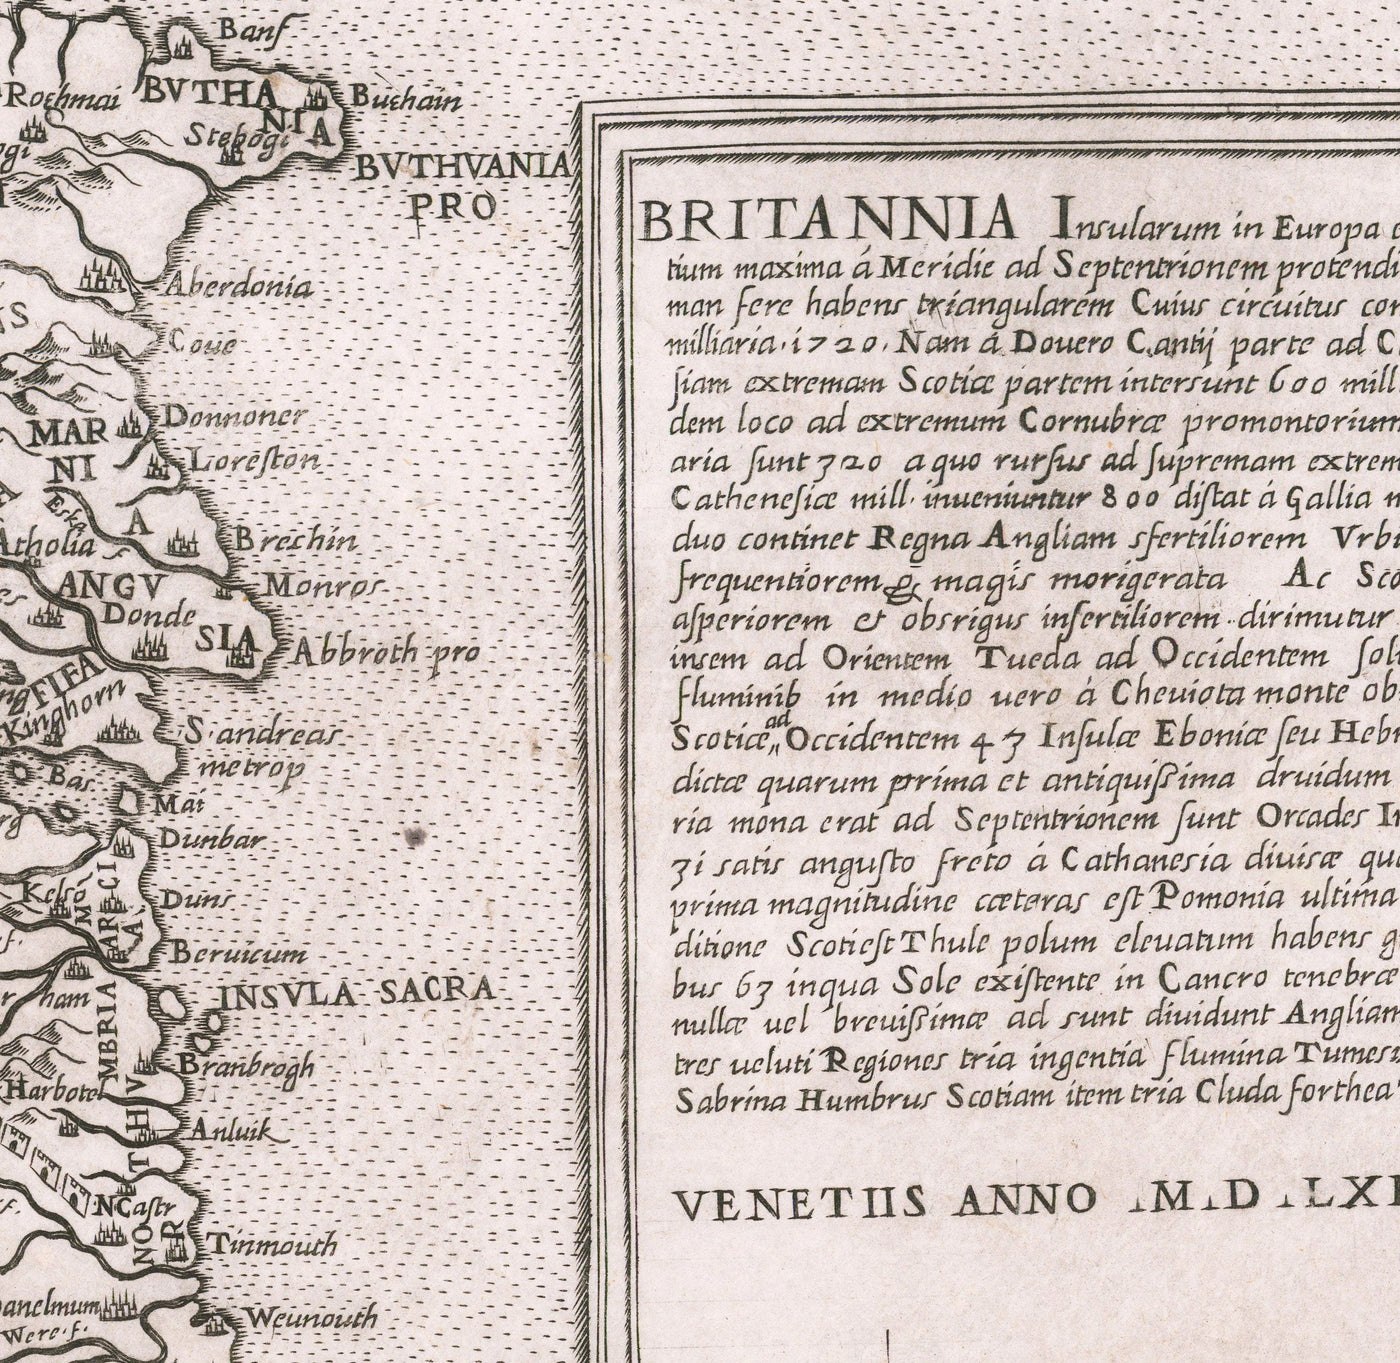 Très ancienne carte des îles britanniques, 1562 par George Lily - Première vraie carte de Grande-Bretagne et d'Irlande - version Bertelli & Lafreri de George Lily's Carte